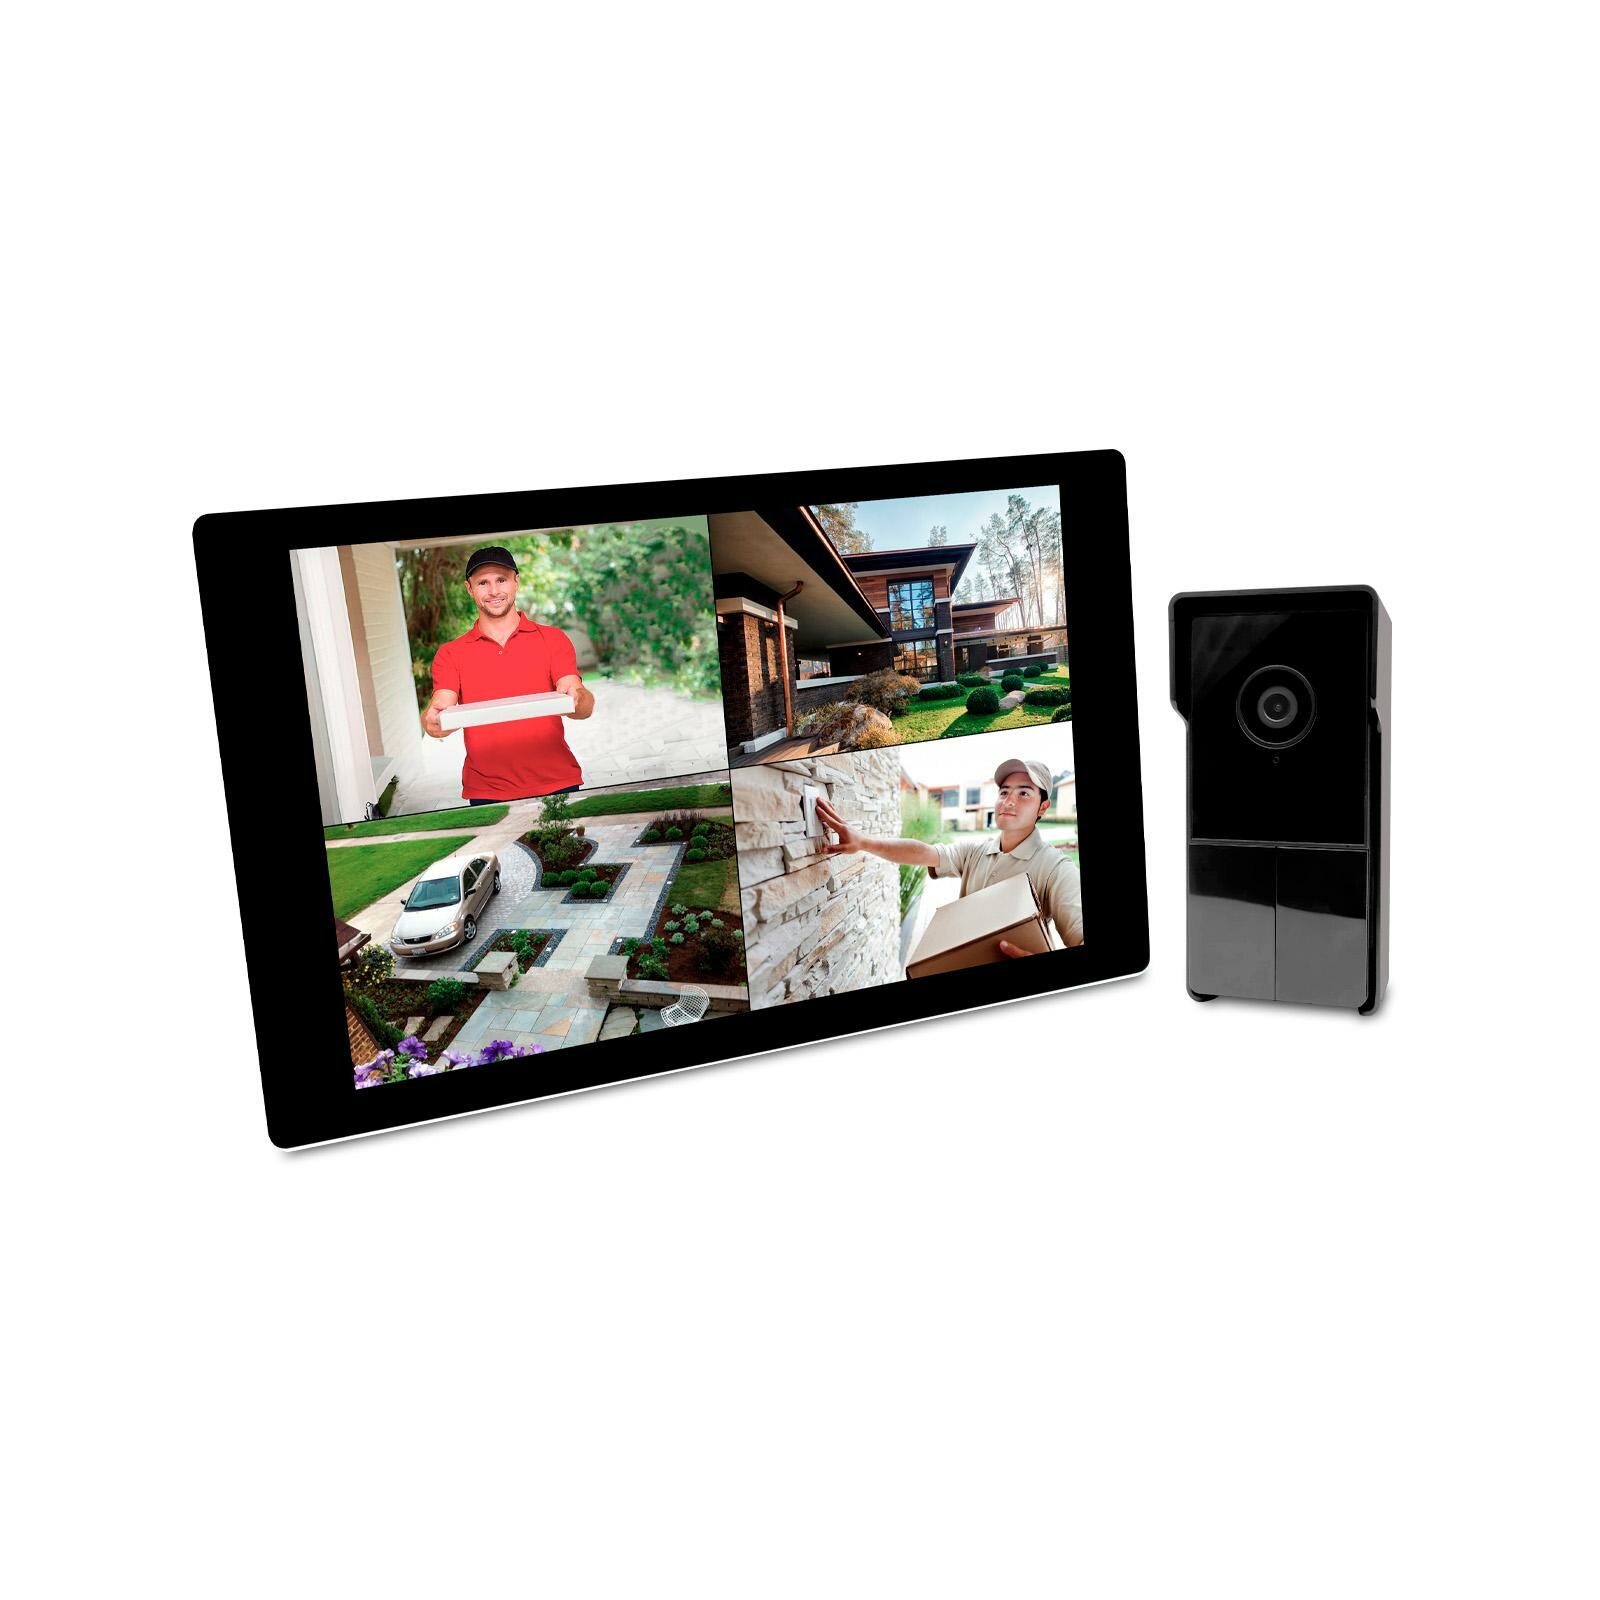 Комплект: беспроводной видеодомофон - SkyNet 1000 (1+0)-TFT (W5133RU): Wi-Fi HD монитор 10 дюймов и 3mp вызывная Wi-Fi панель для домофона.